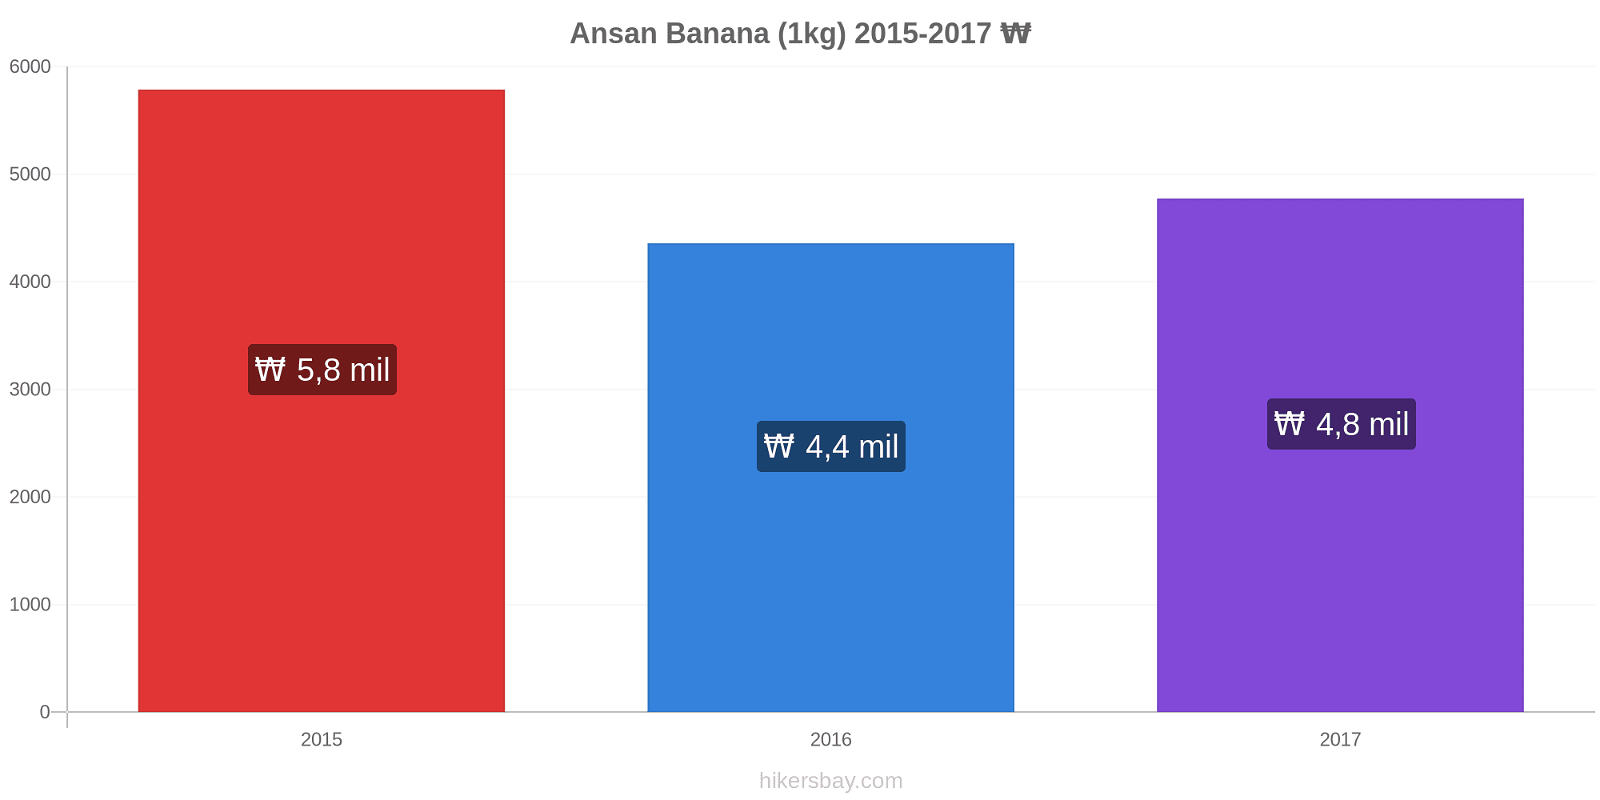 Ansan variação de preço Banana (1kg) hikersbay.com